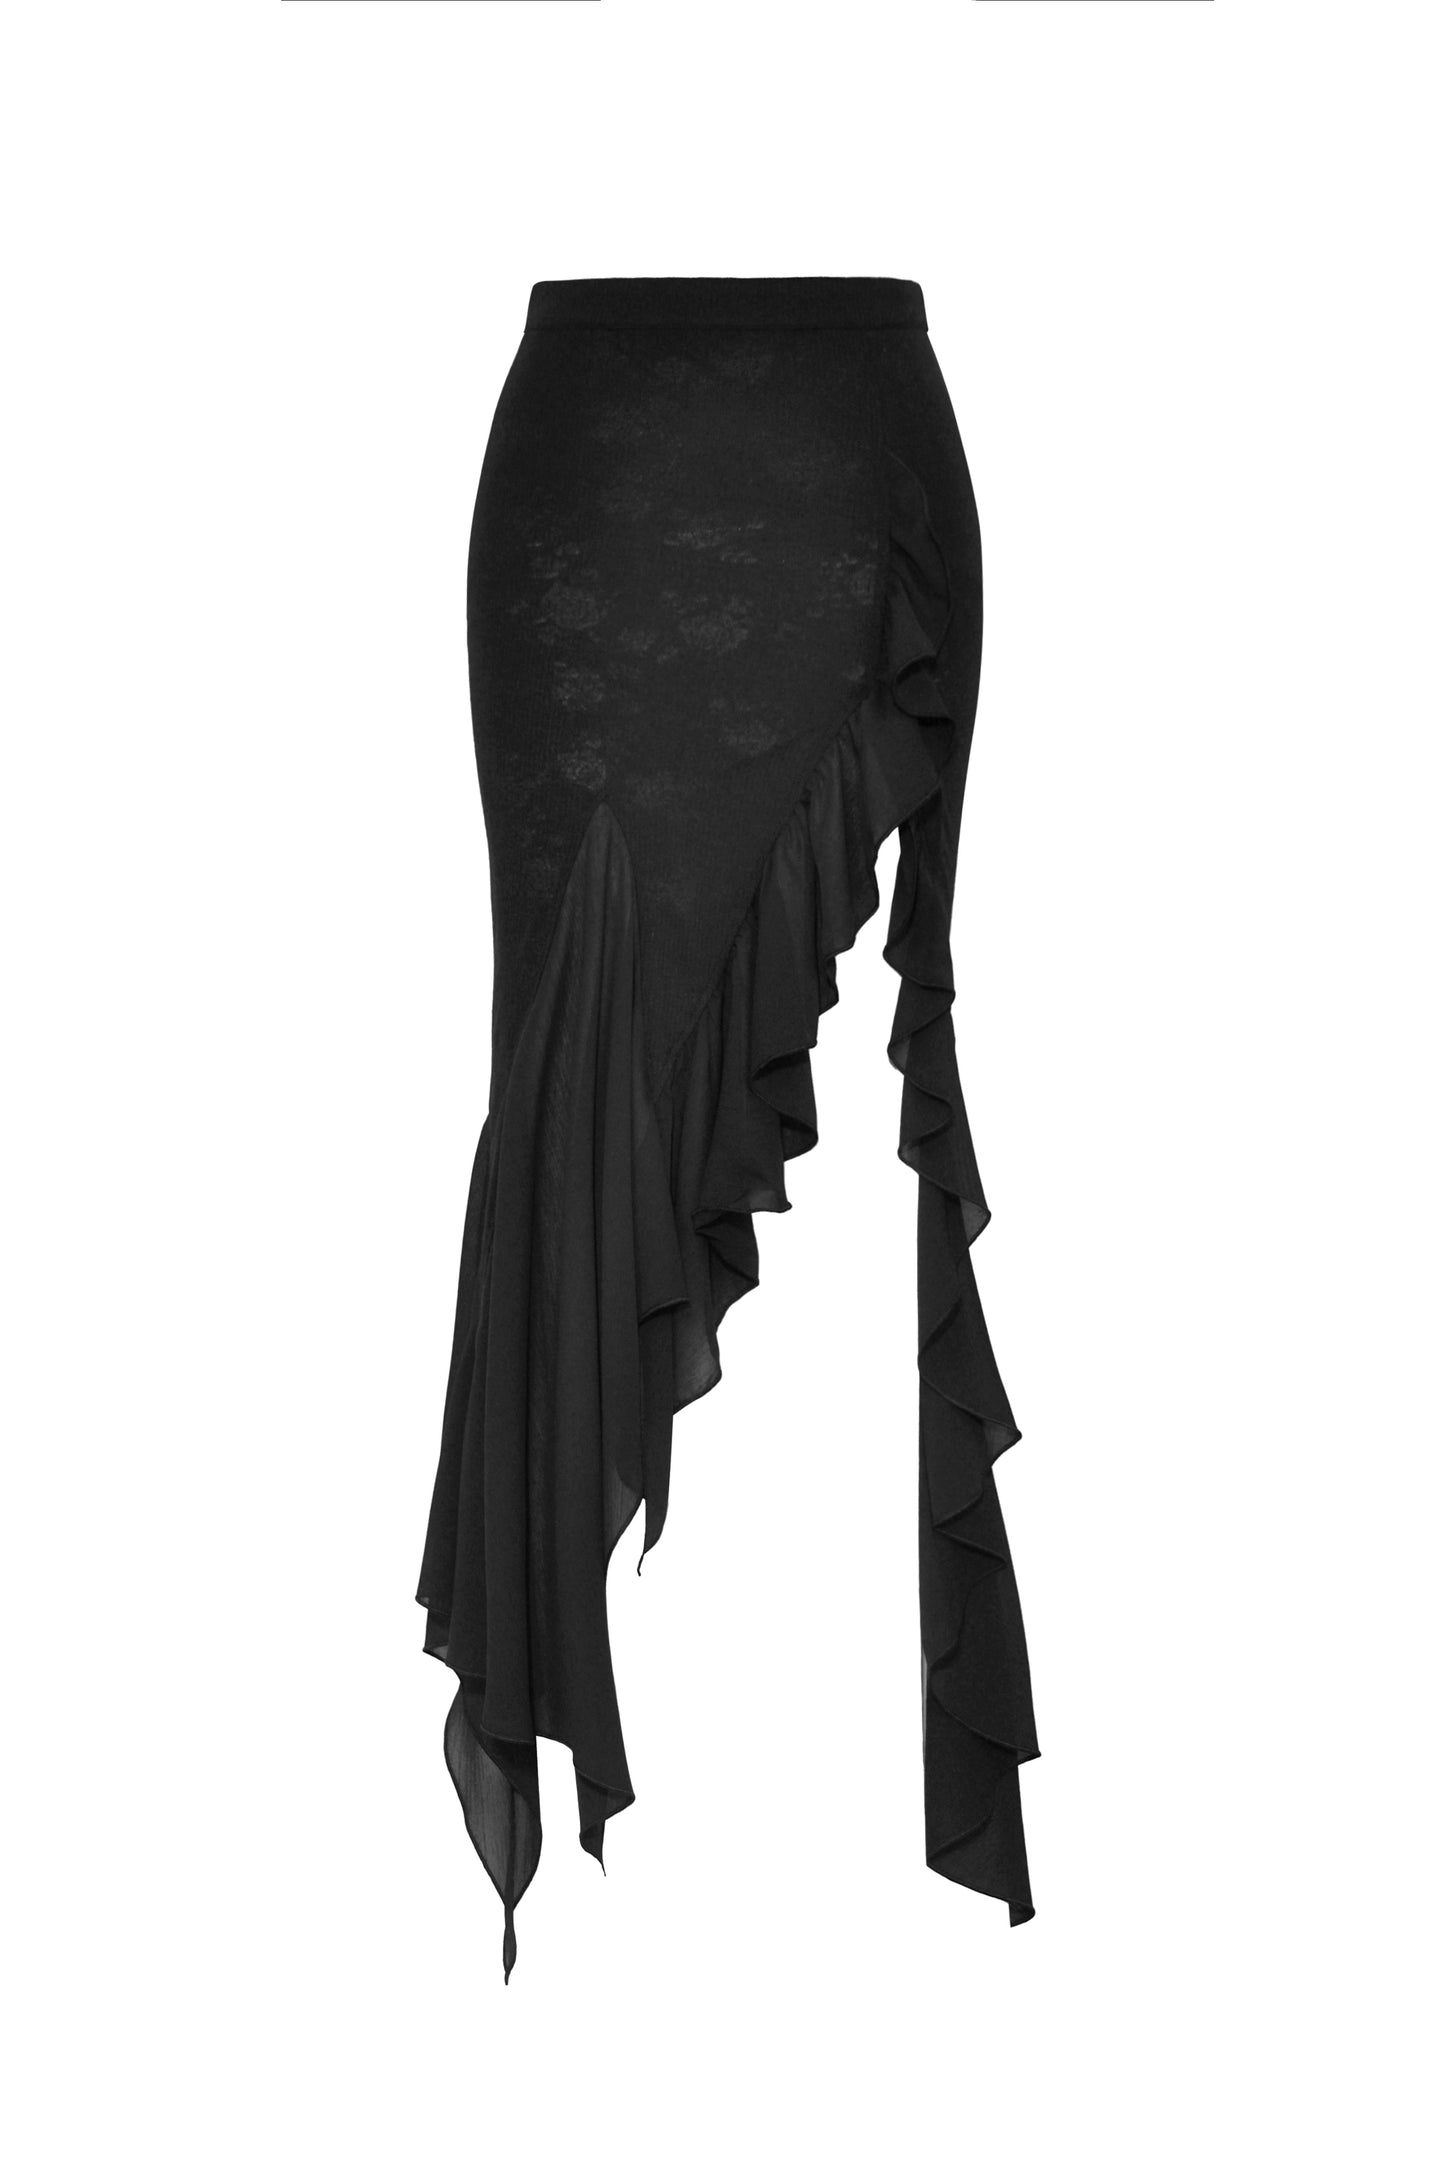 Dark Matter Mermaid Ruffle Skirt by Dark In Love